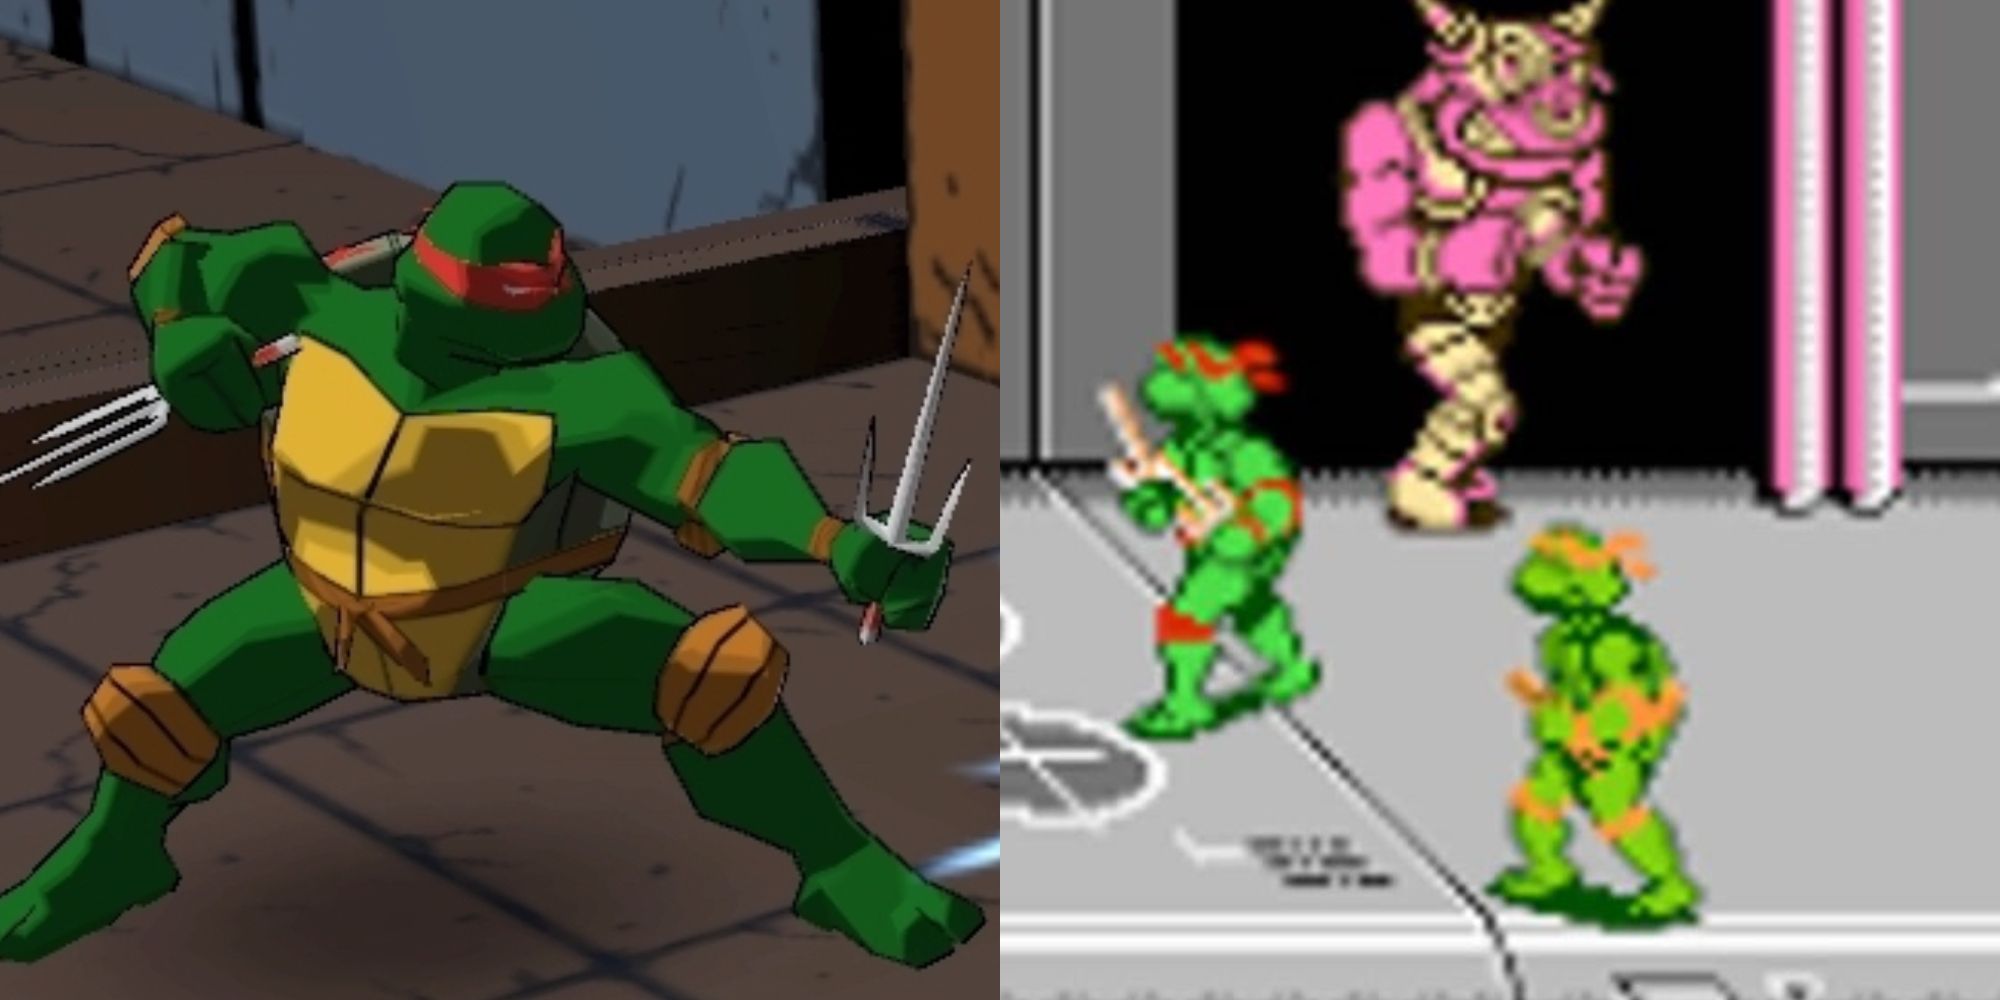 Best Teenage Mutant Ninja Turtles Games On Nintendo Systems